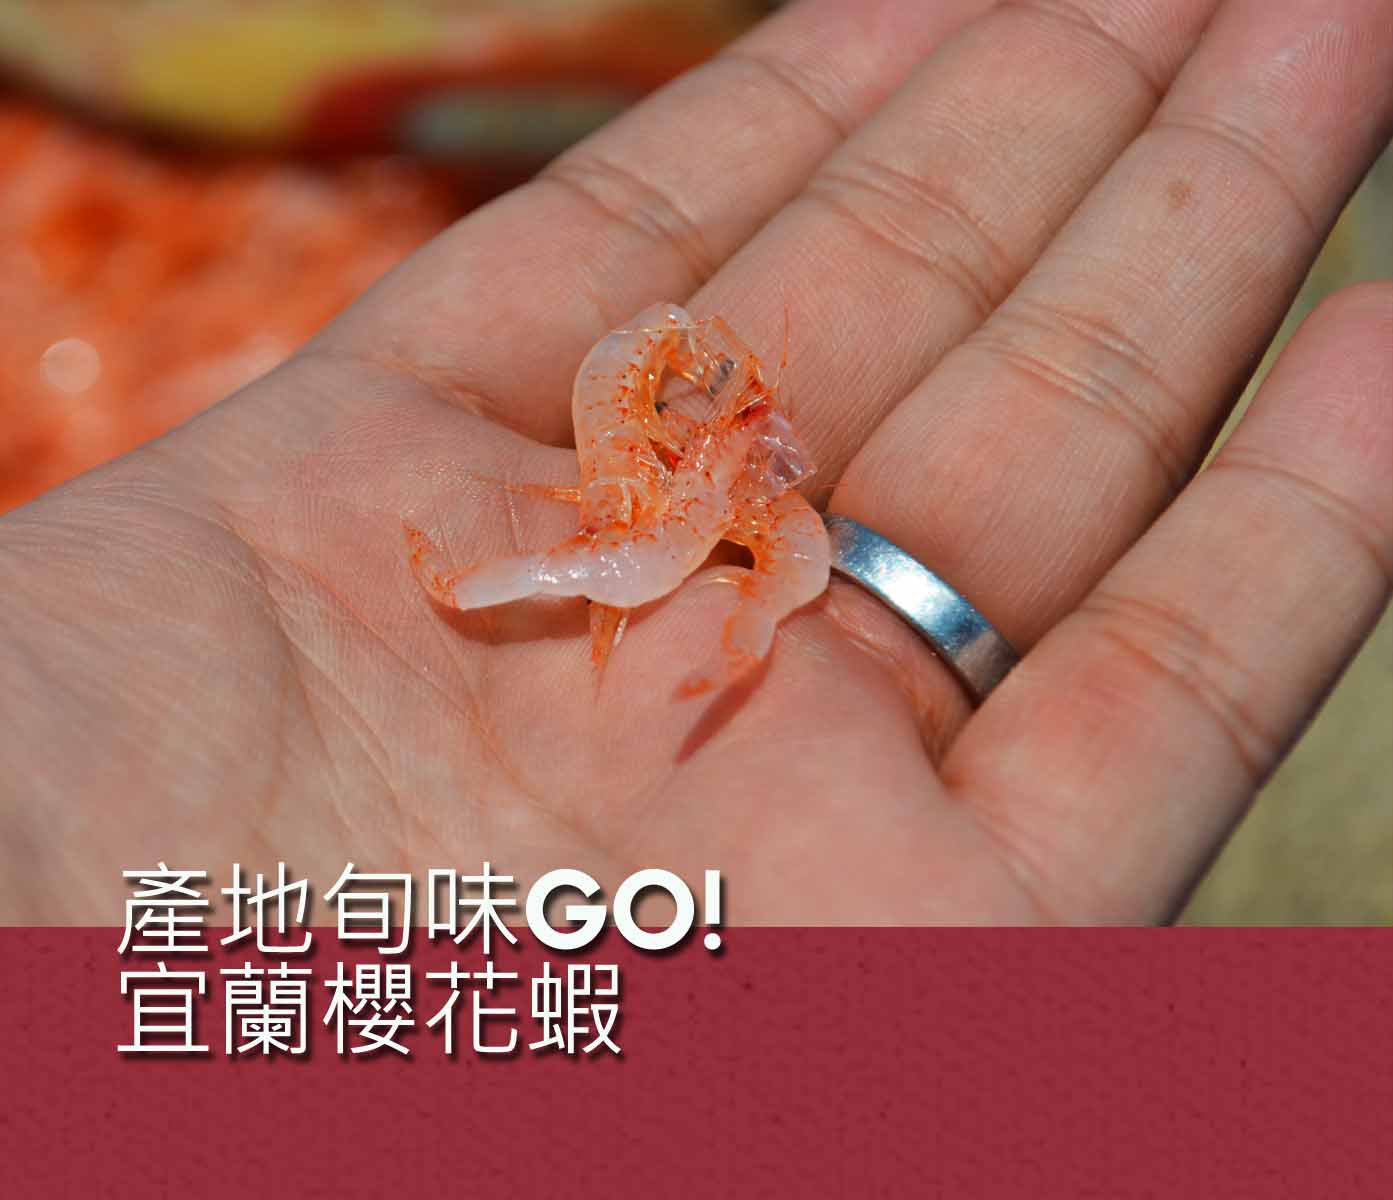 產地旬味GO!宜蘭櫻花蝦活動照片1